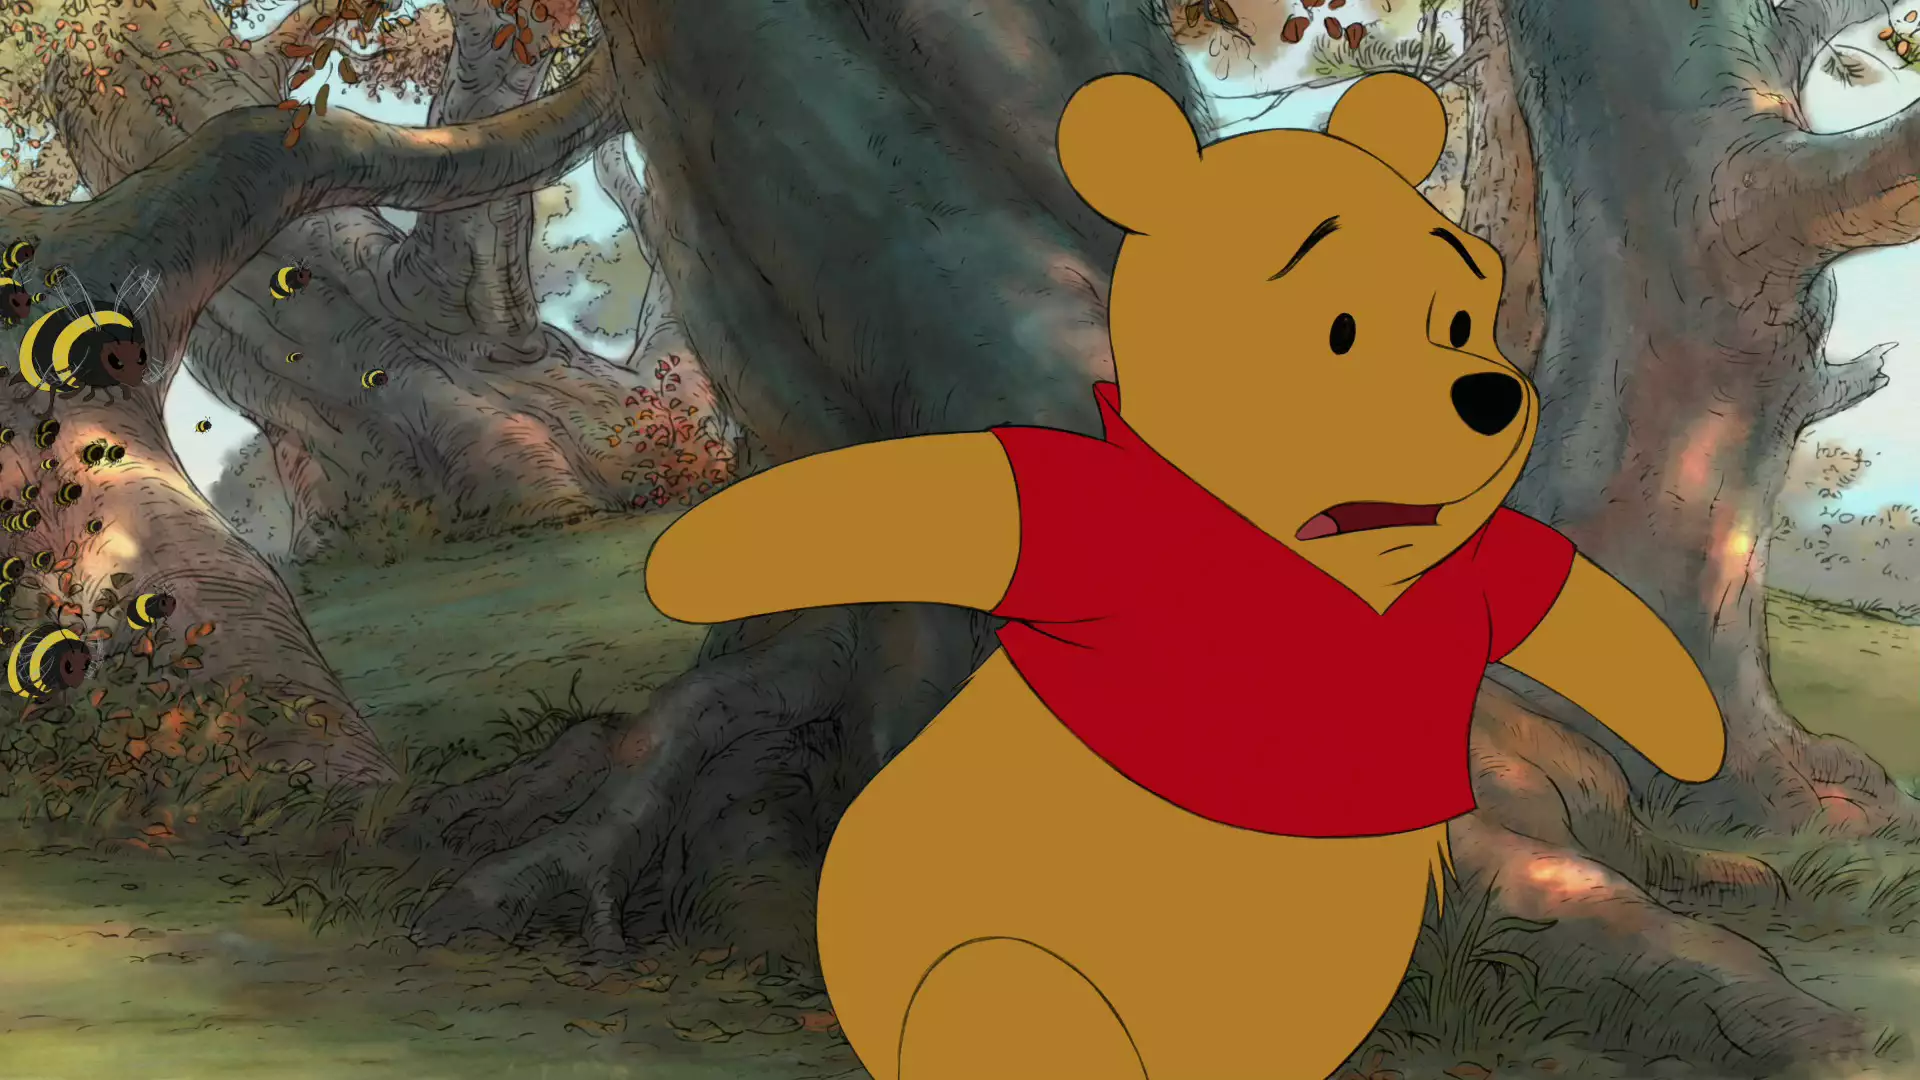 Winnie the pooh. Винни-пух. Винни пух 2003. Винни пух 2019. Винни пух английский мультфильм.